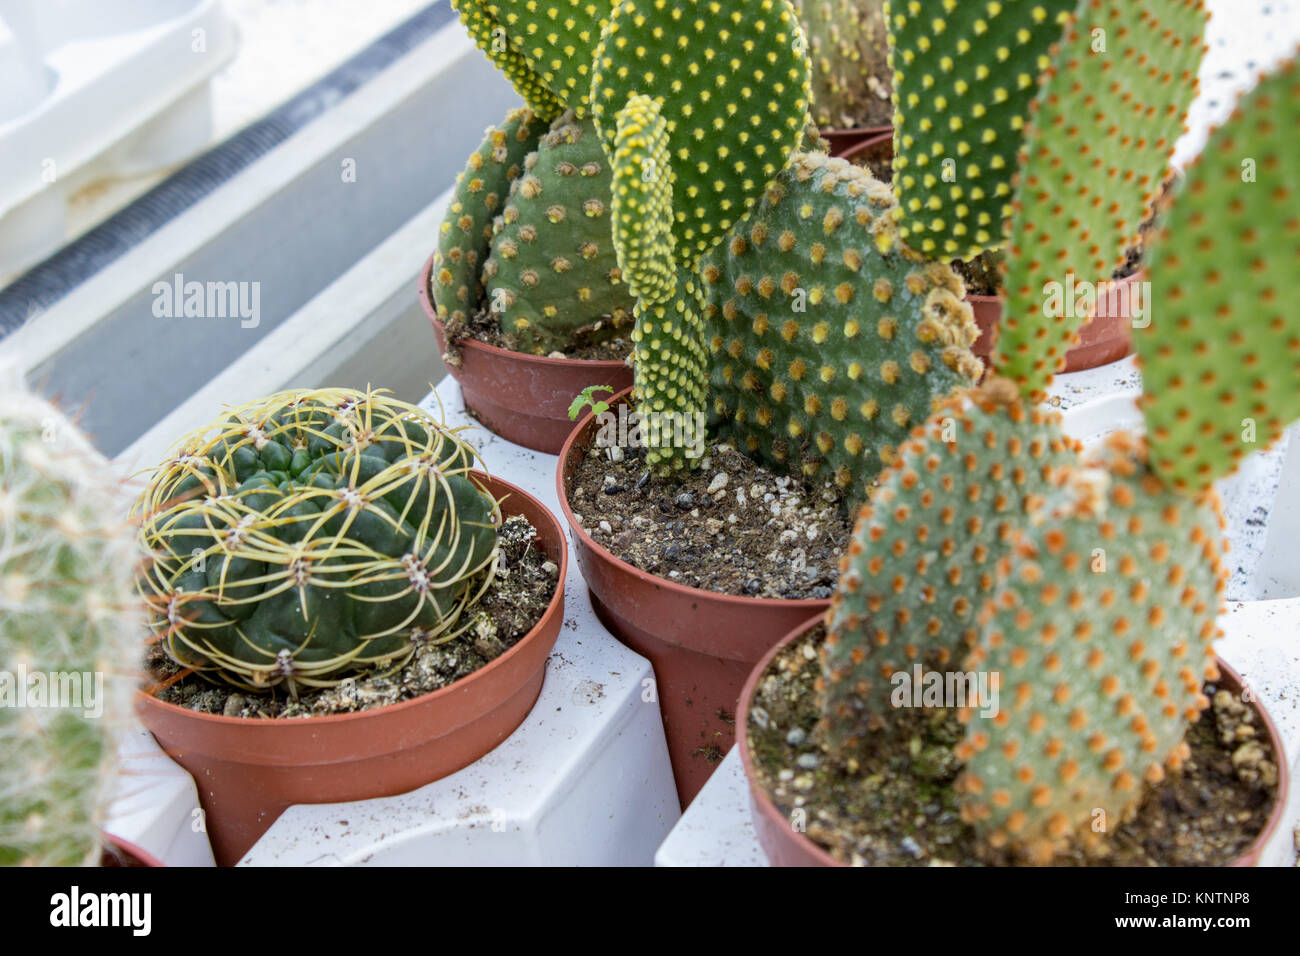 Varie cactus in vasi di plastica, close up shot Foto Stock